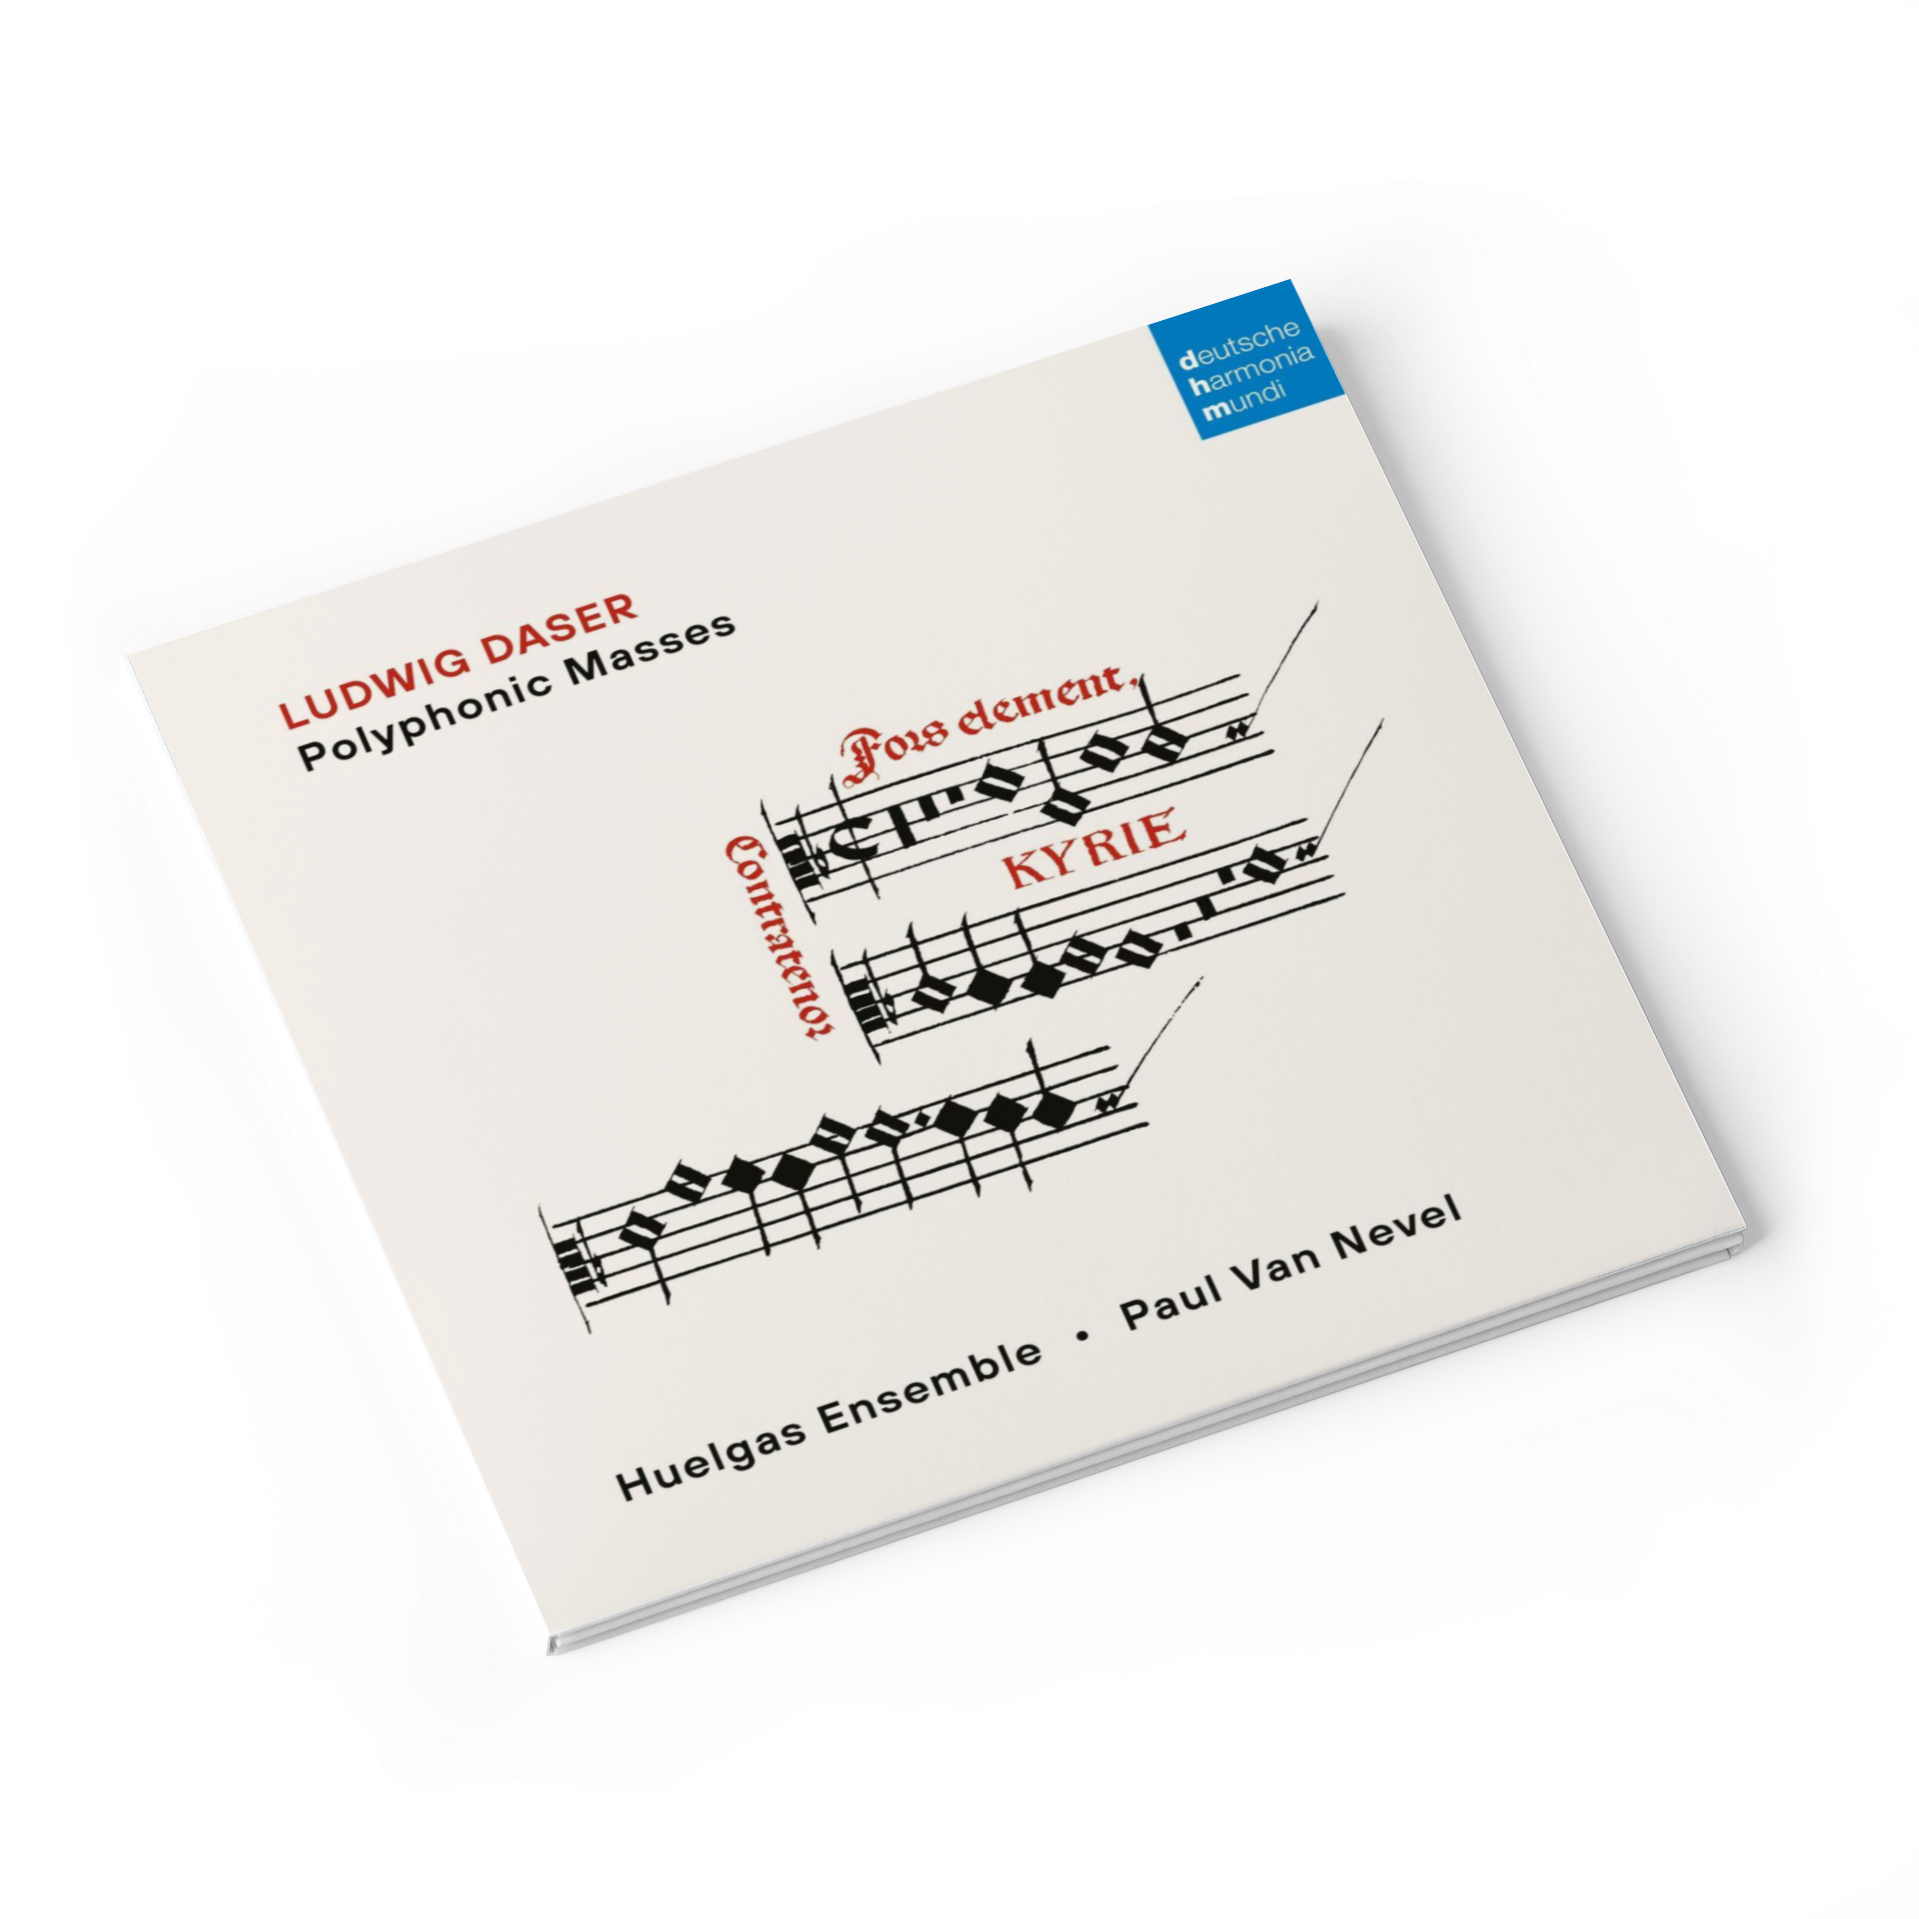 Okładka płyty CD Daser Polyphonic Masses zespołu Huelgas Ensemble